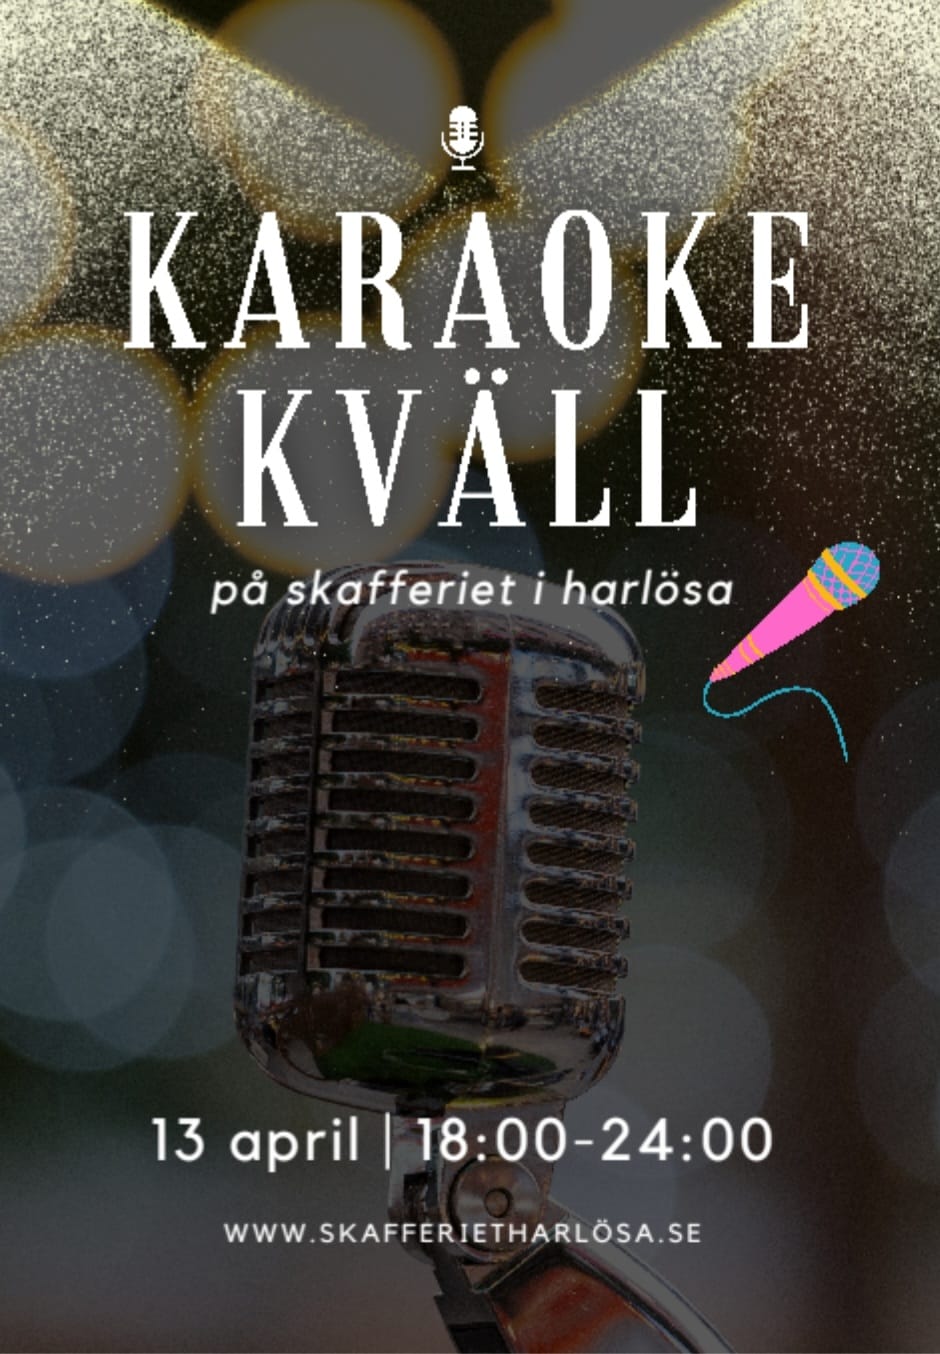 Karaoke Kvall